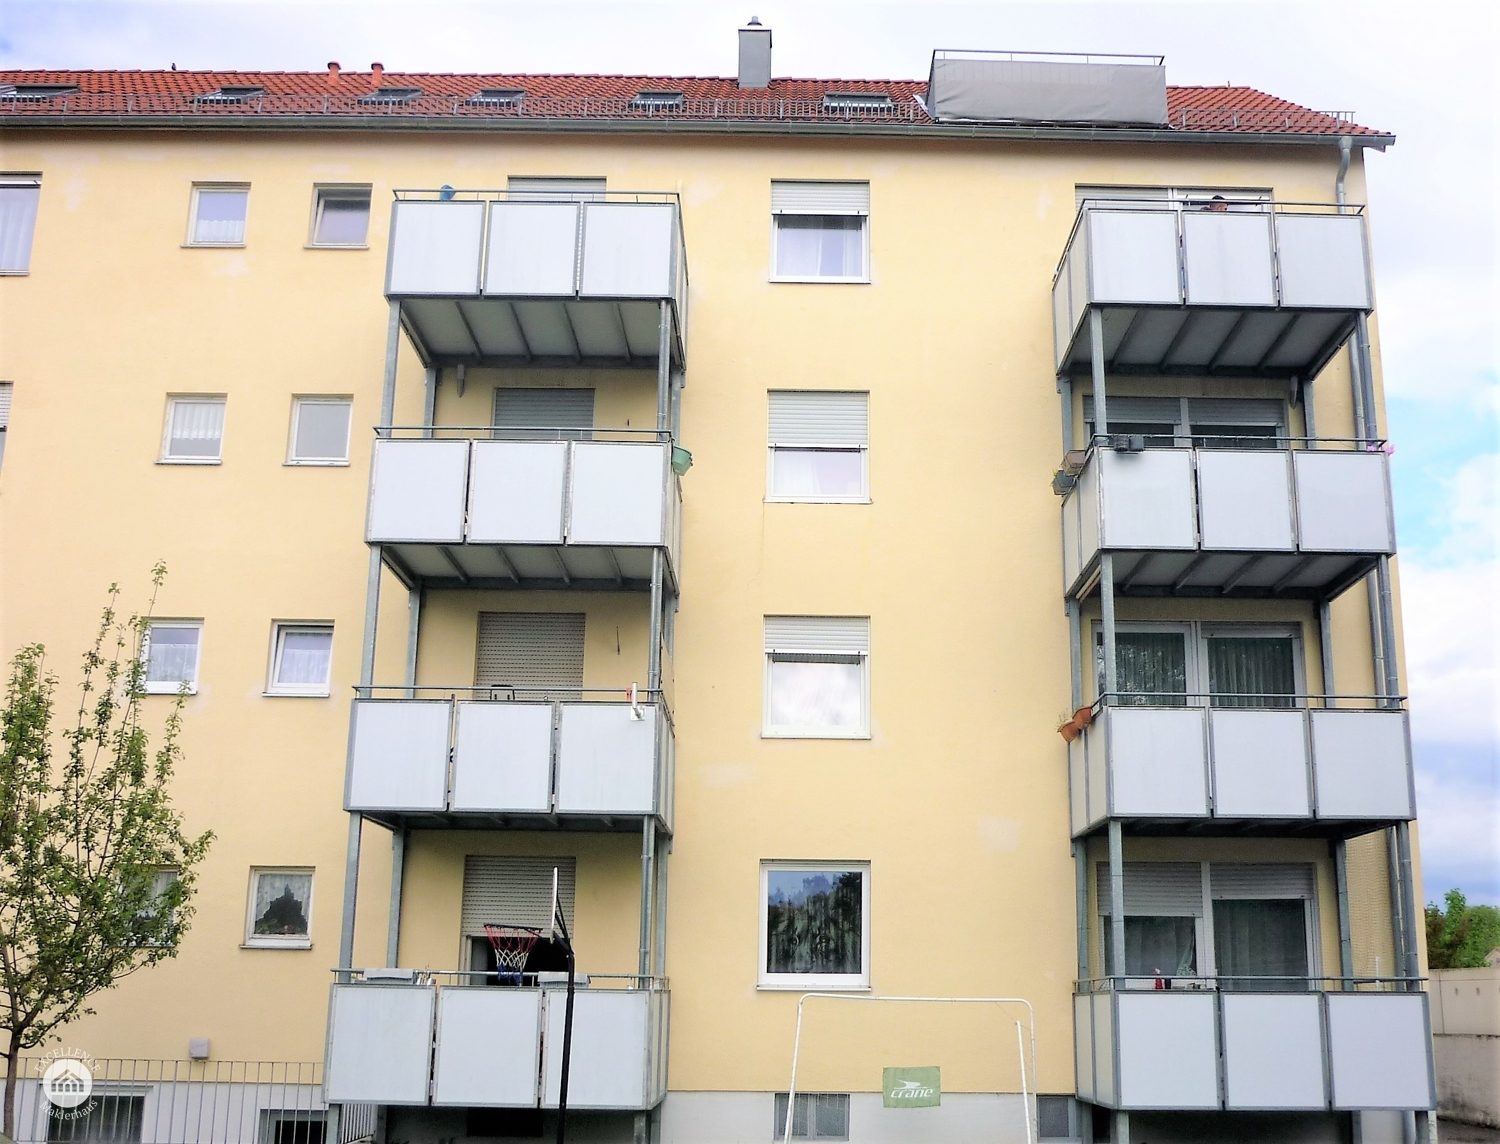 Immobilienangebot - Augsburg / Oberhausen - Alle - Großzügige 3 Zimmer Wohnung nahe den Wertach-Auen sucht Investor mit Weitblick oder zum Eigenbezug